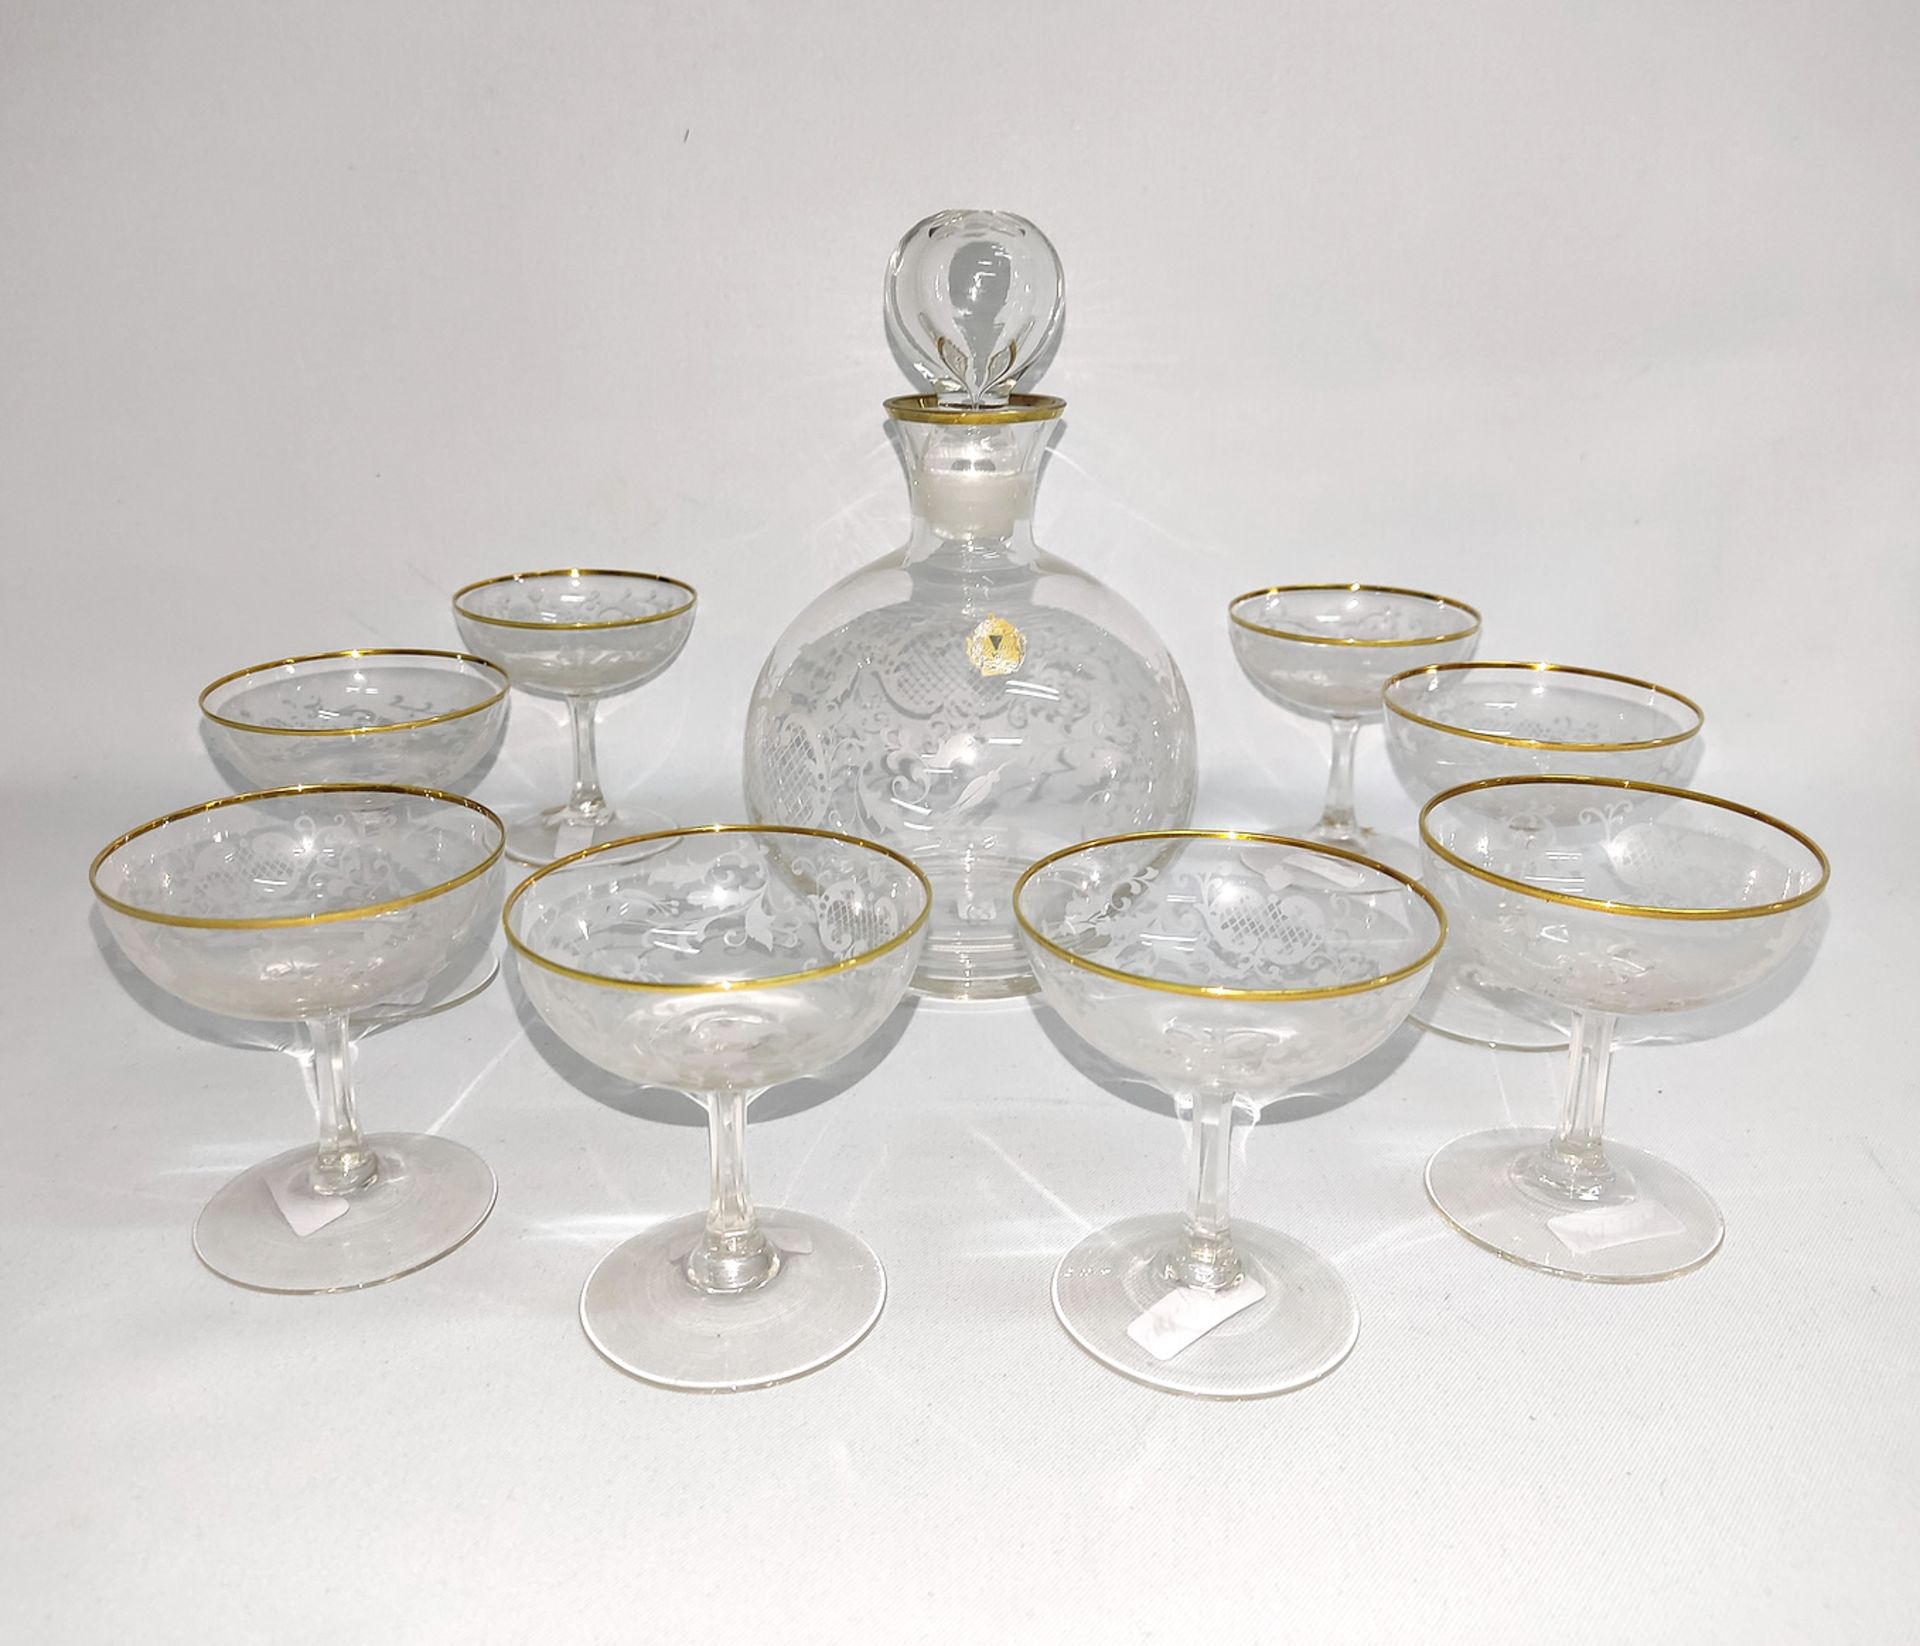 Glaskaraffe mit 8 Gläsern "Mozart Glas" Kristallglasfabrik Spiegelau